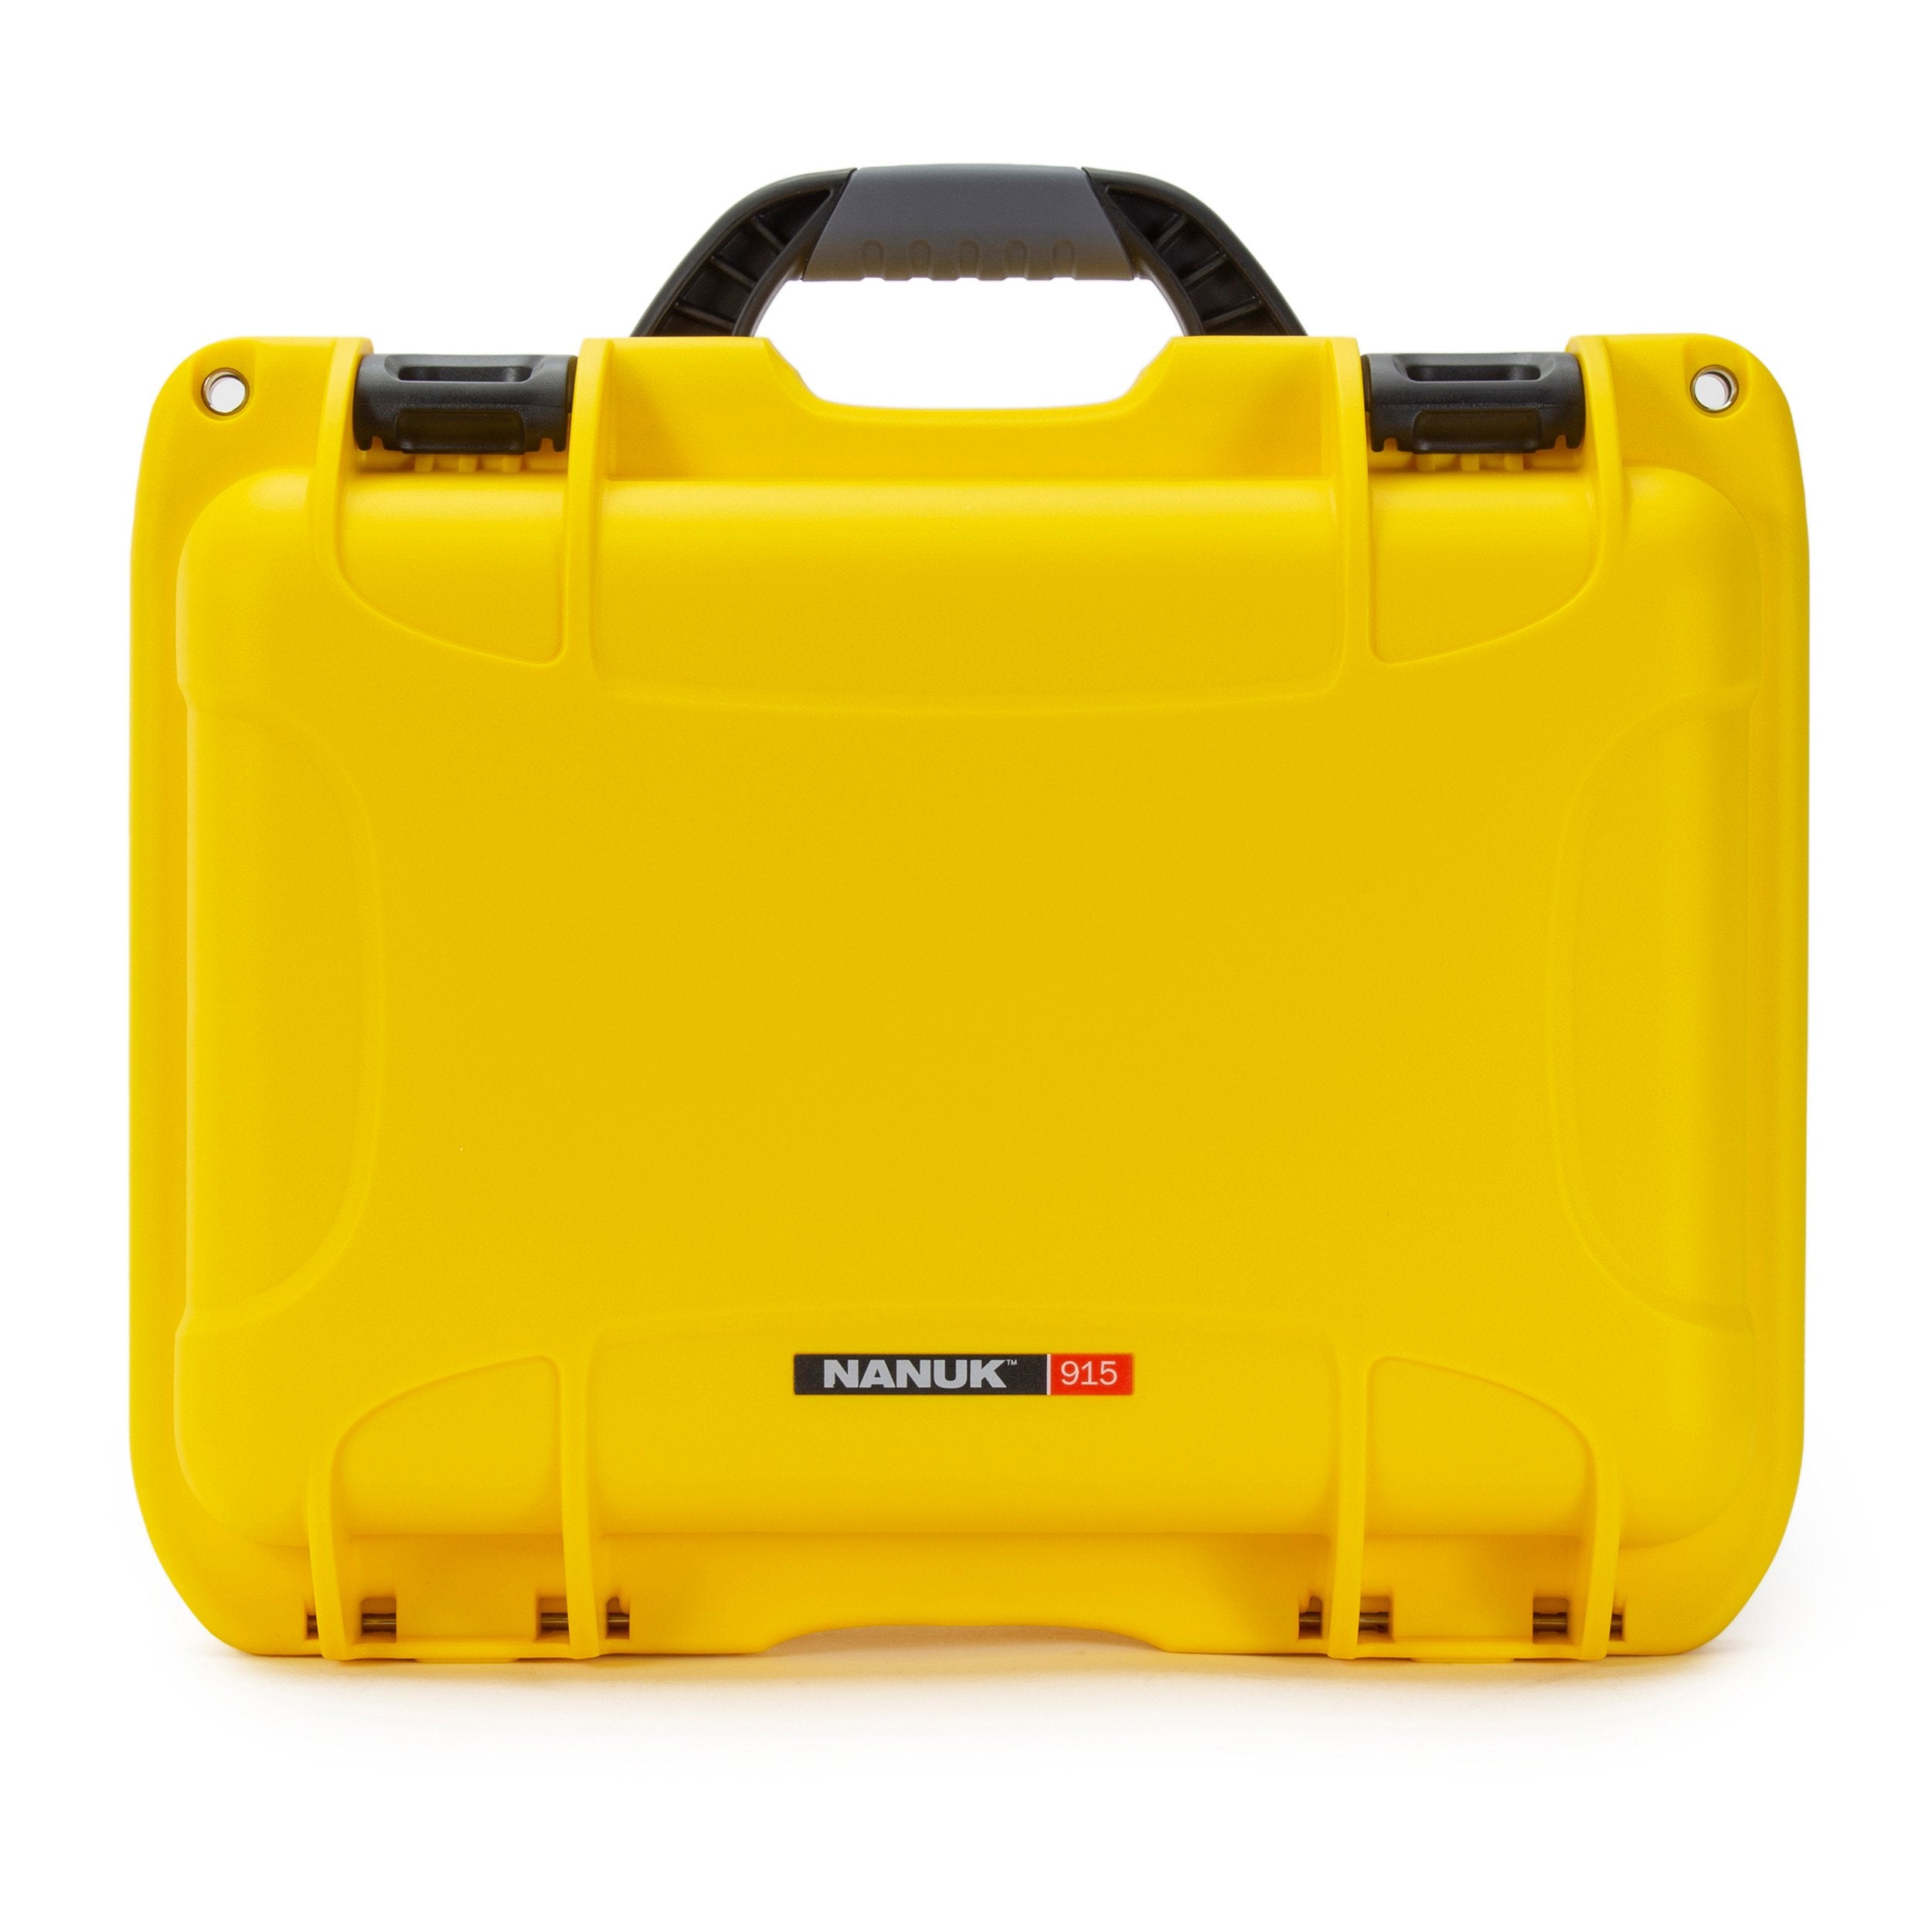 nanuk 910 waterproof hard case with foam insert for dji osmo osmo and osmo mobile tan